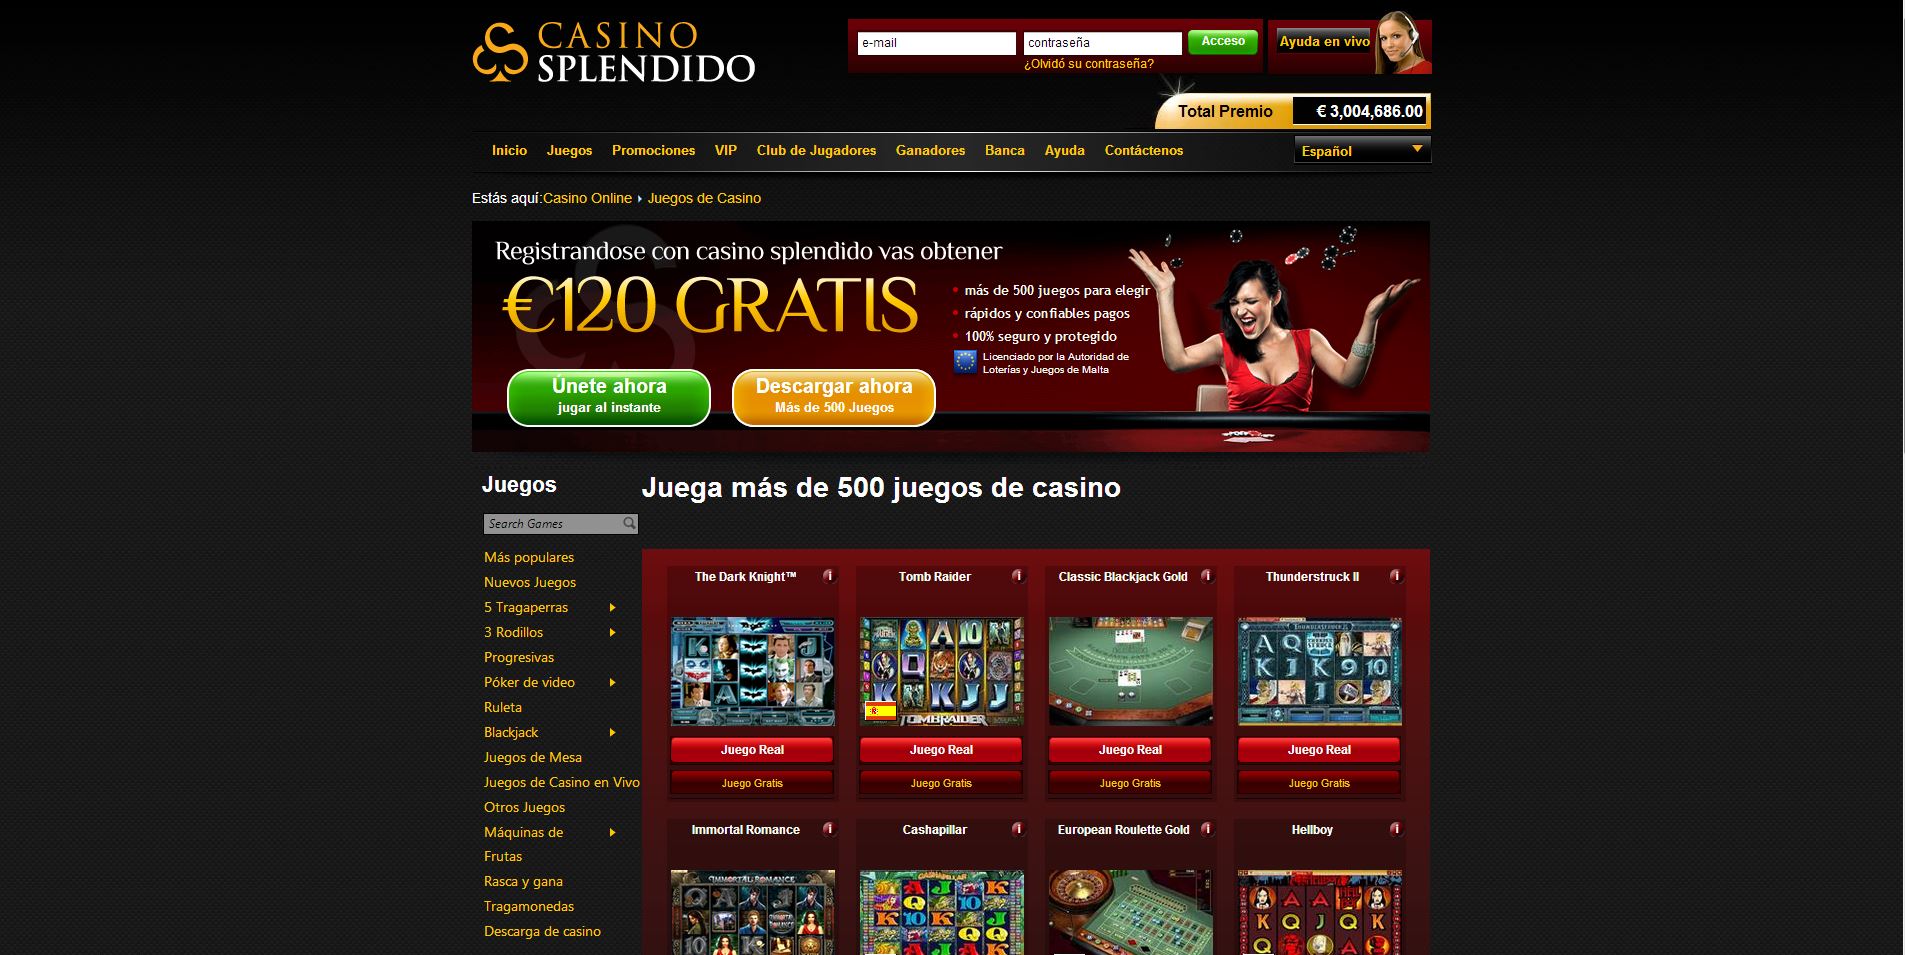 Casinos on line en estados unidos jugar Cashpillar Tragamonedas - 17173